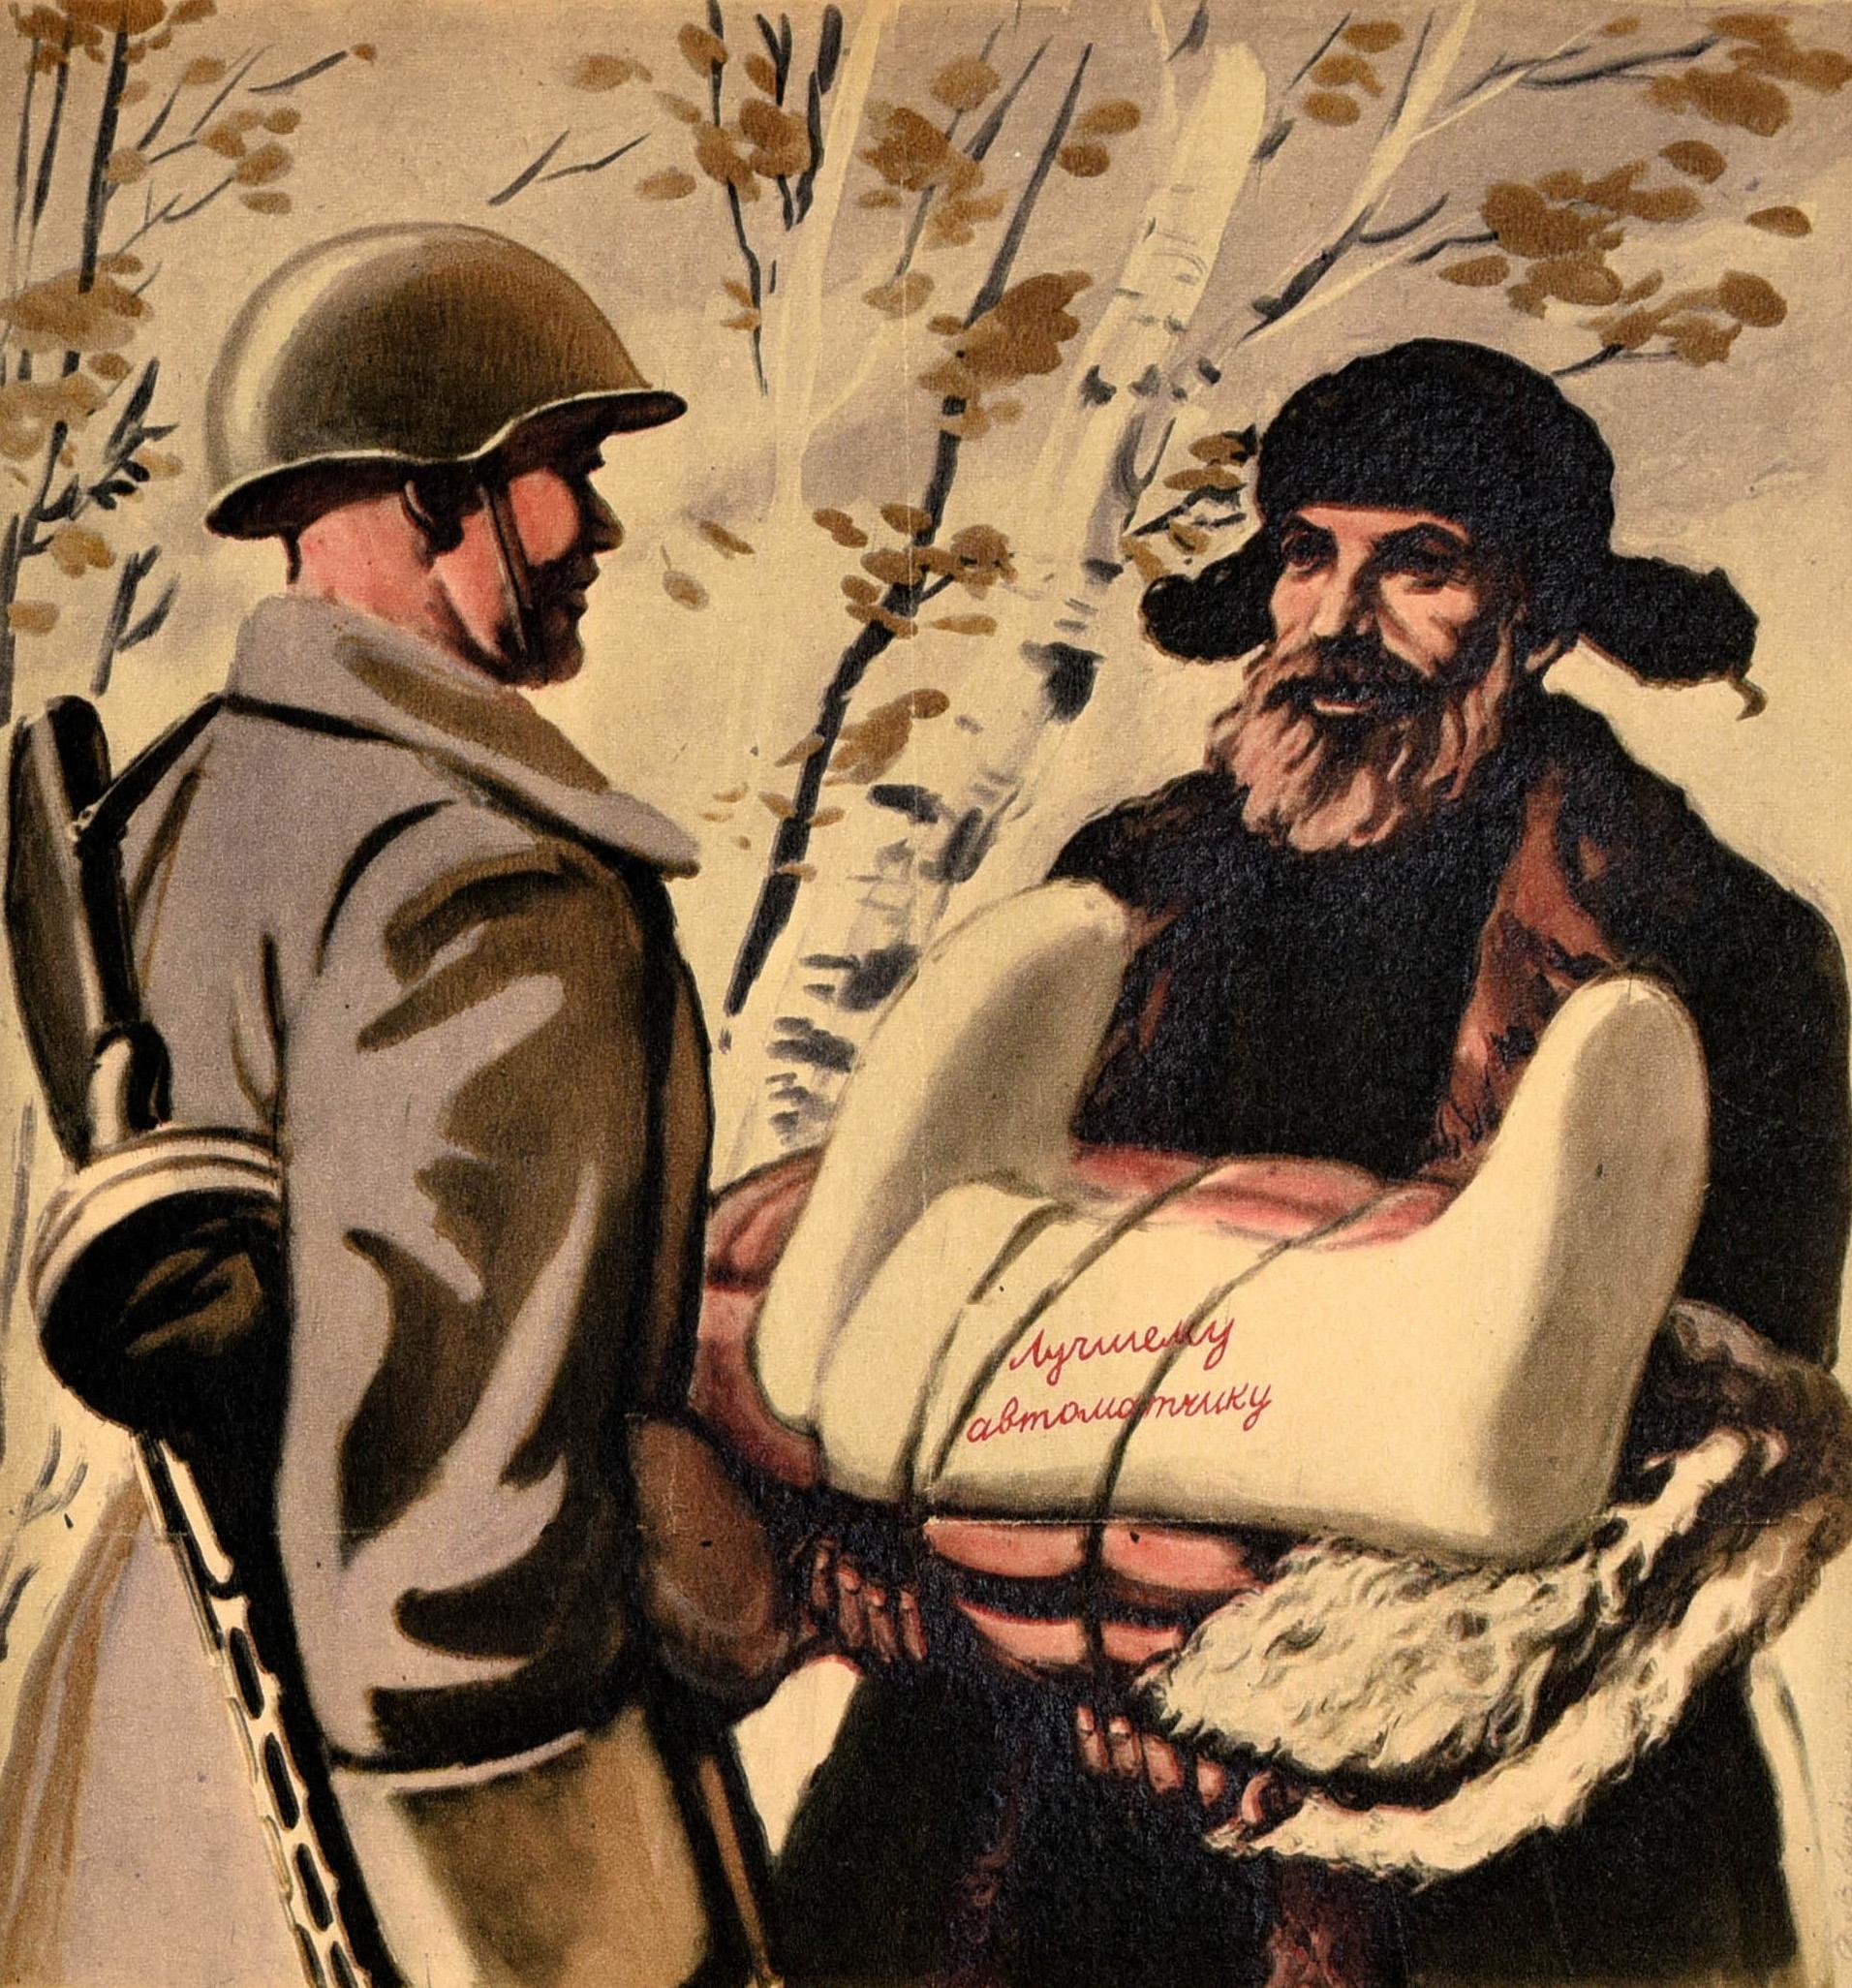 Originales sowjetisches Propagandaplakat aus dem Zweiten Weltkrieg Valenki, gut gekleideter Kampfer, UdSSR, Original – Print von Unknown